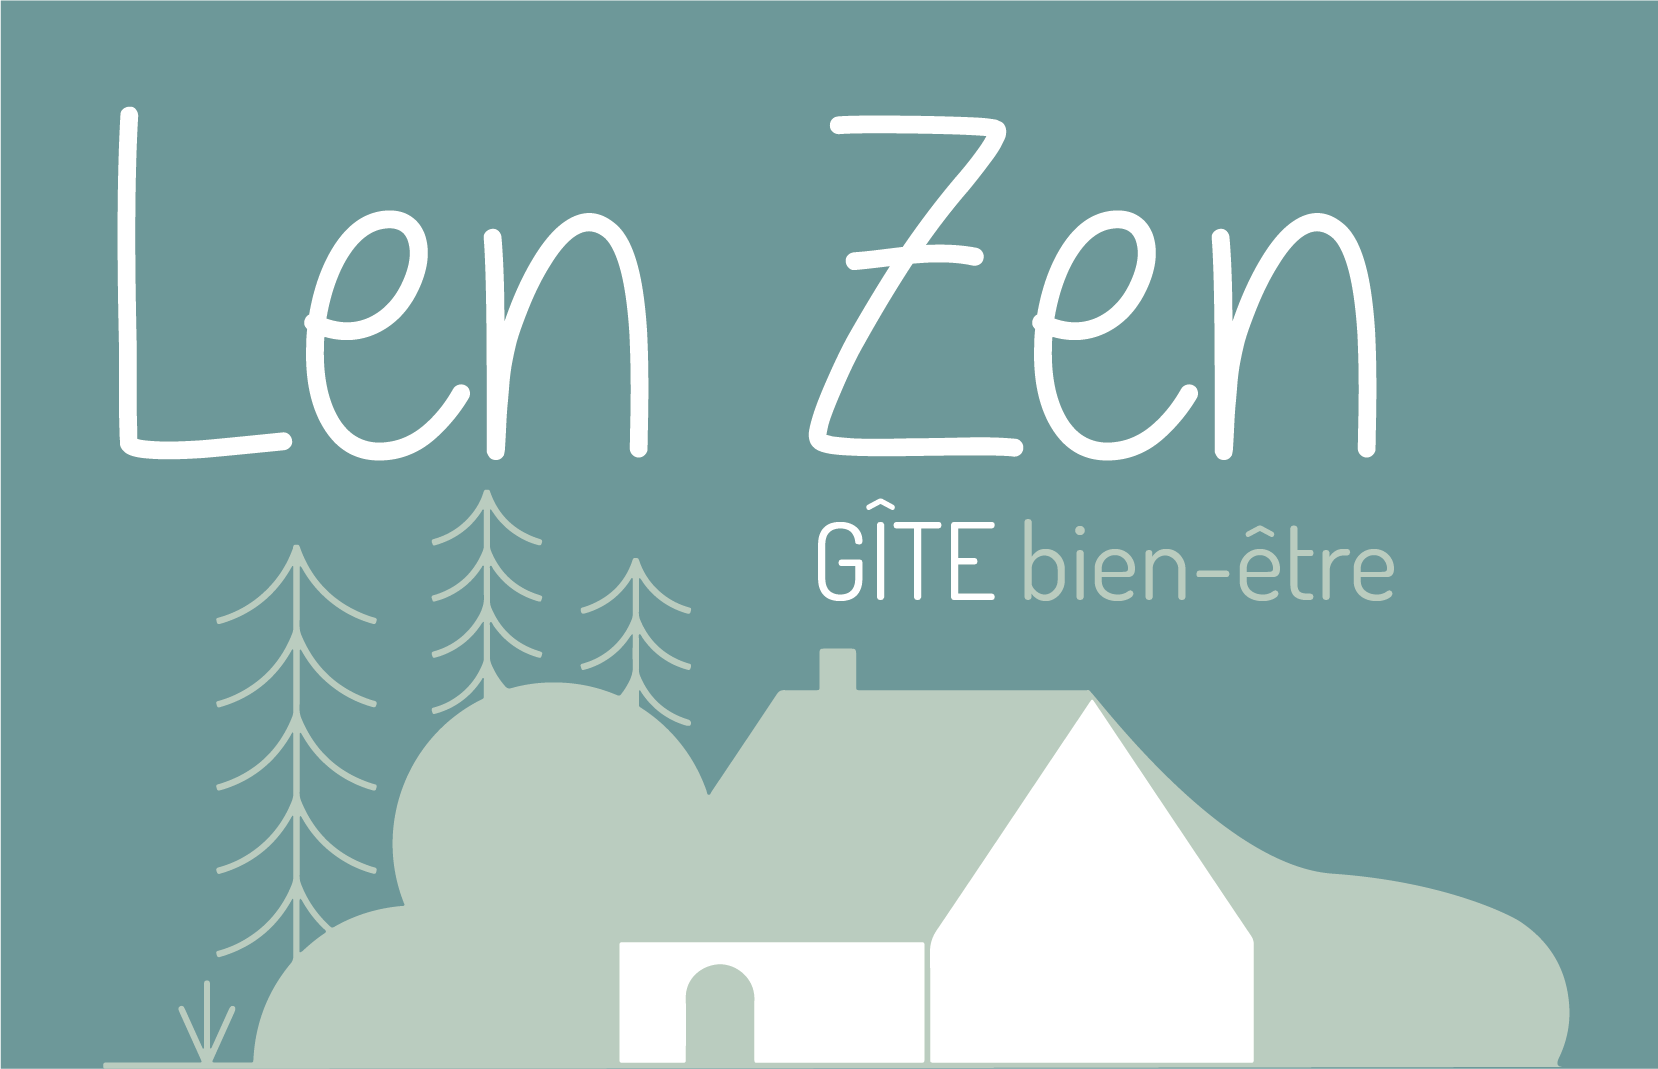 Logo du gîte du Len Zen